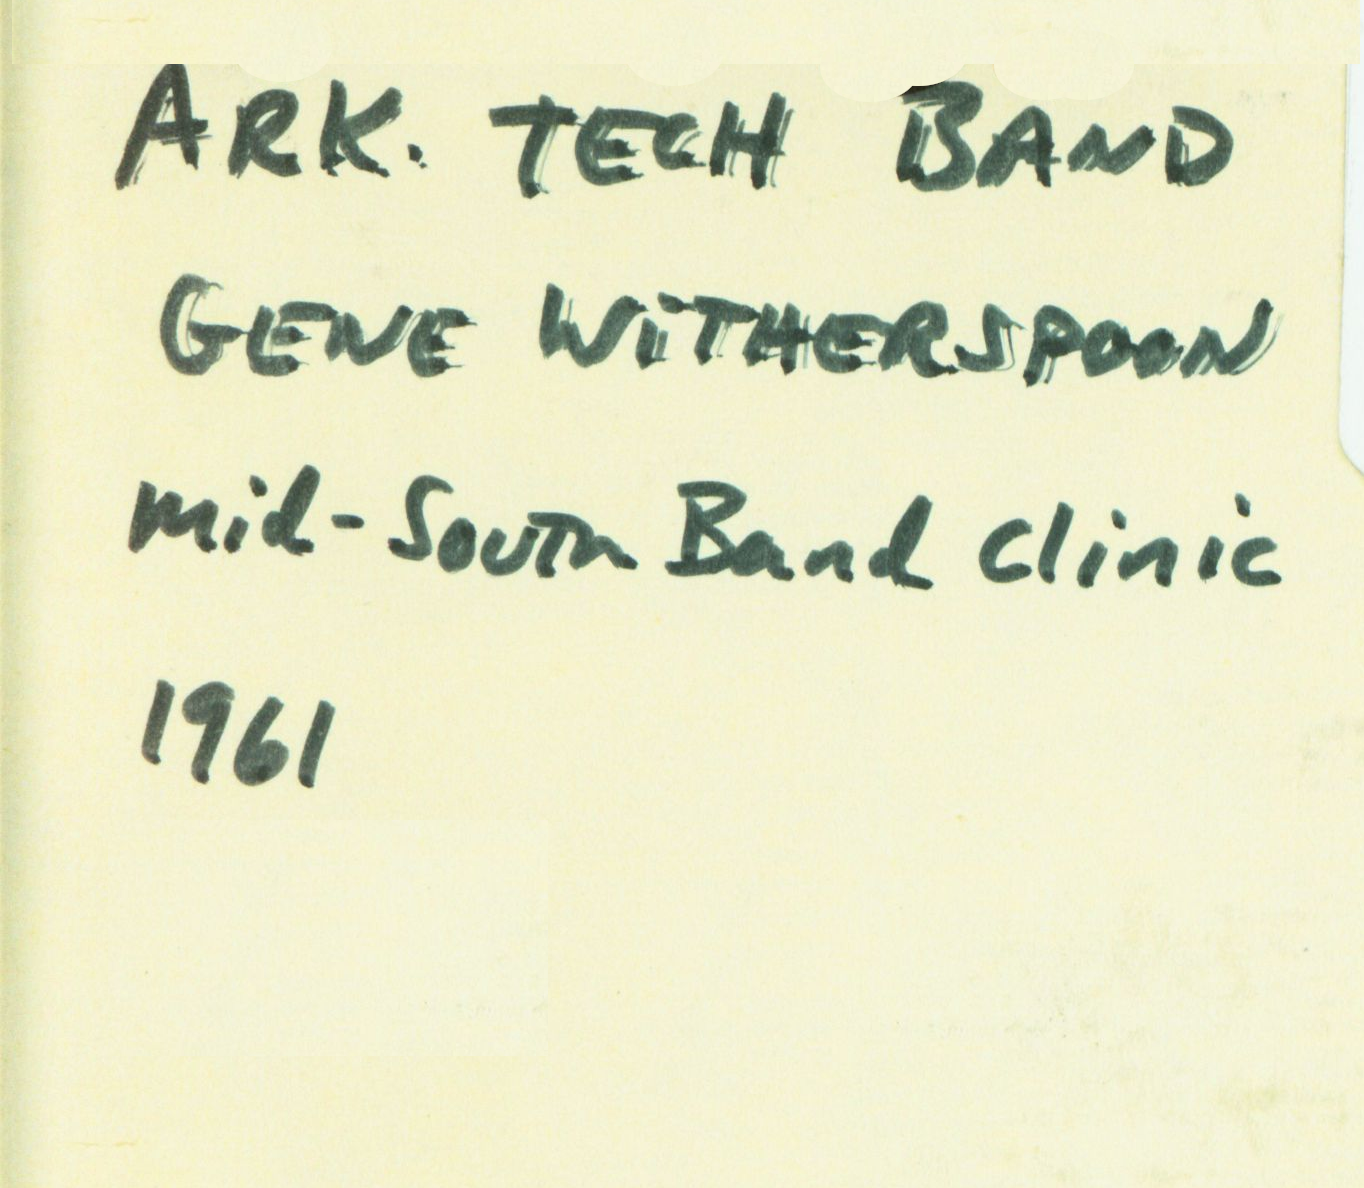 1961 Arkansas Tech Concert Band